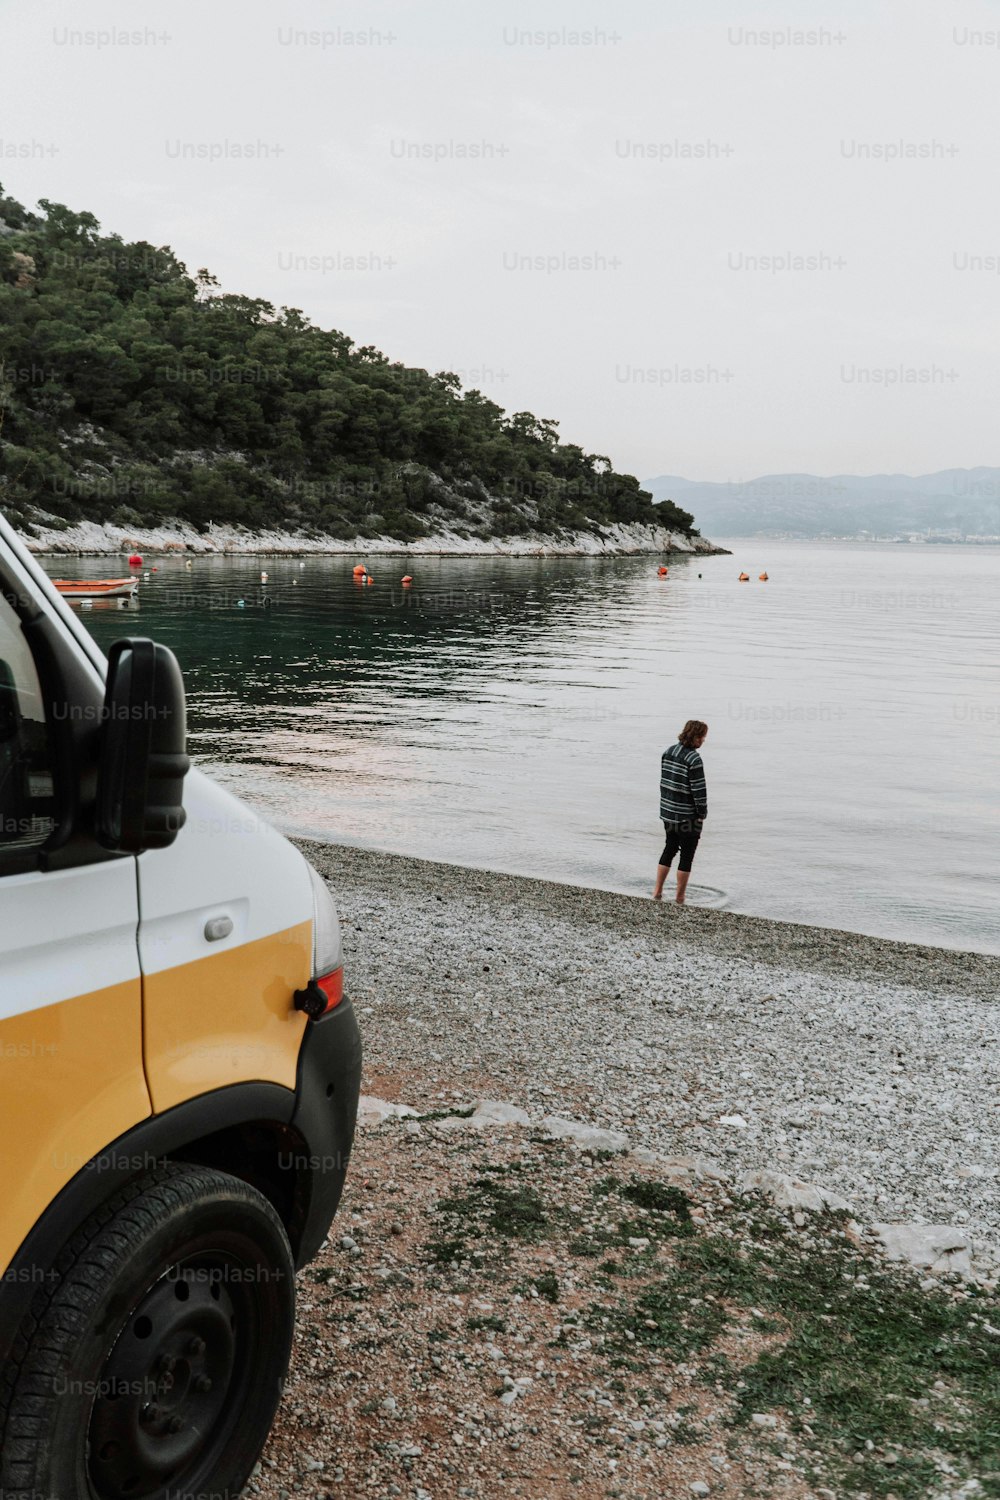 Ein Mann steht am Strand neben einem Lieferwagen